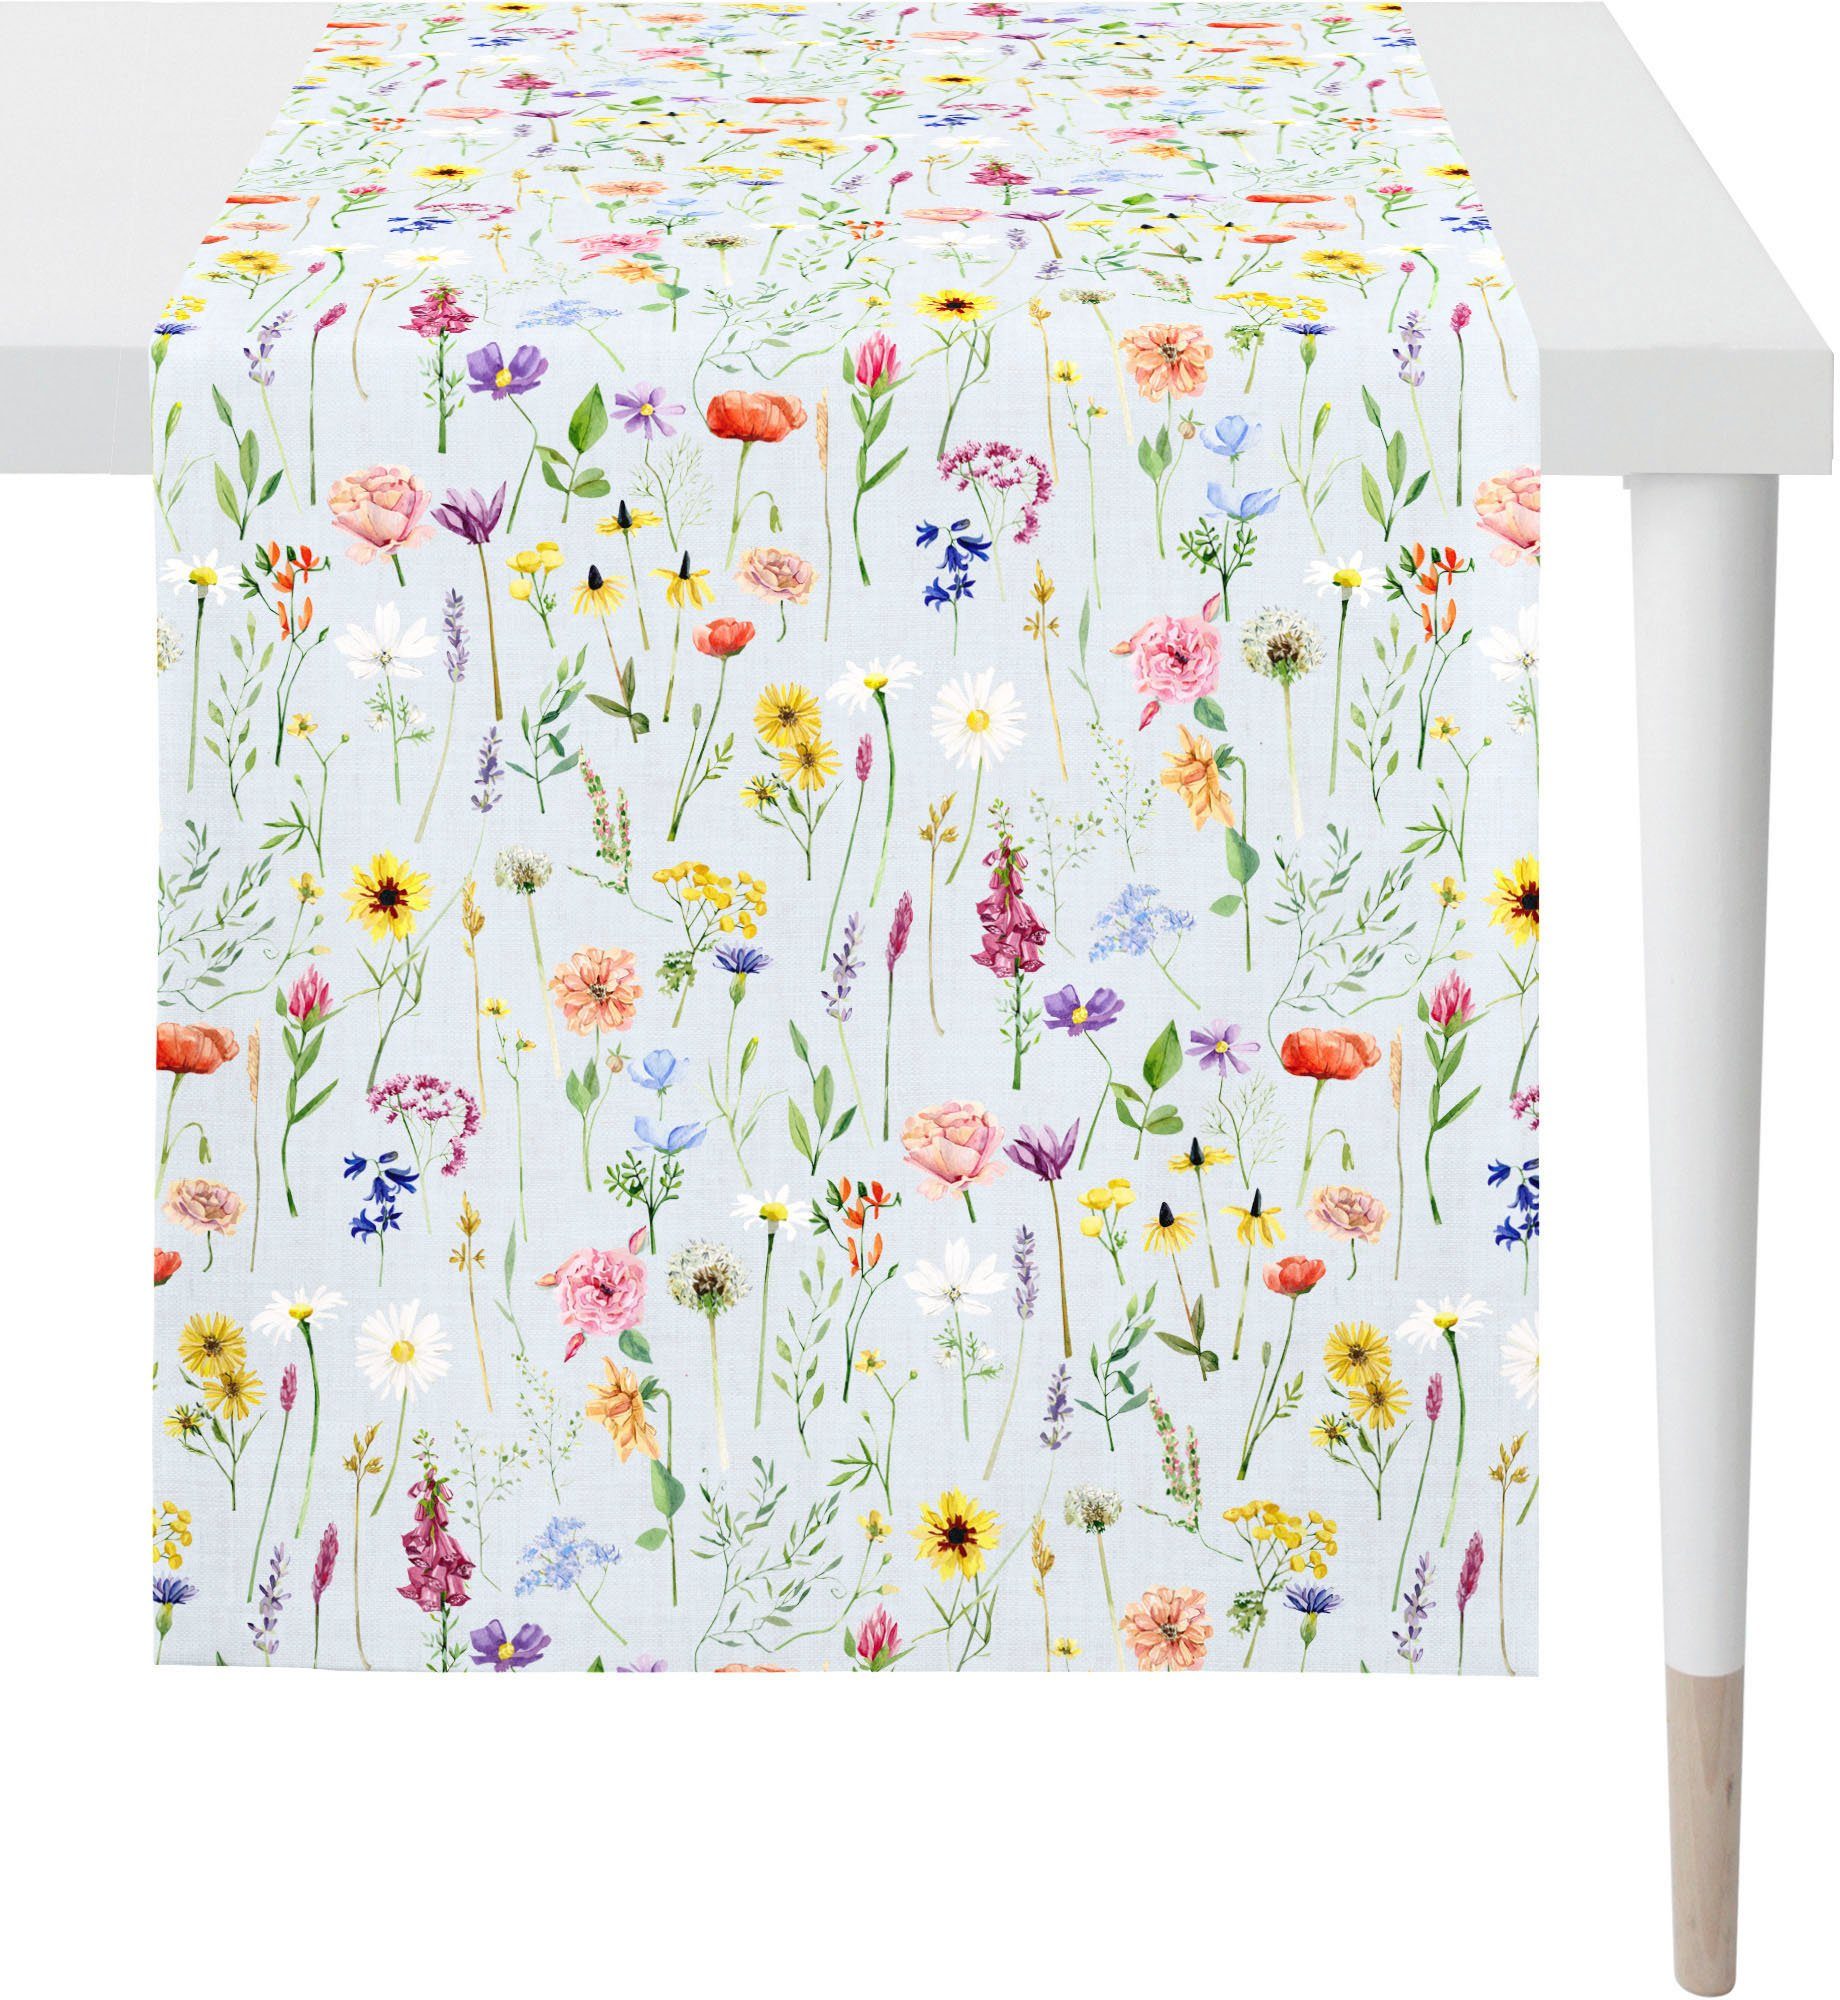 APELT Tischläufer 6815 SPRINGTIME, Frühjahrsdeko, Frühling (1-tlg), Digitaldruck, mit Frühjahrsblüten, wie auf einer Streublumenwiese